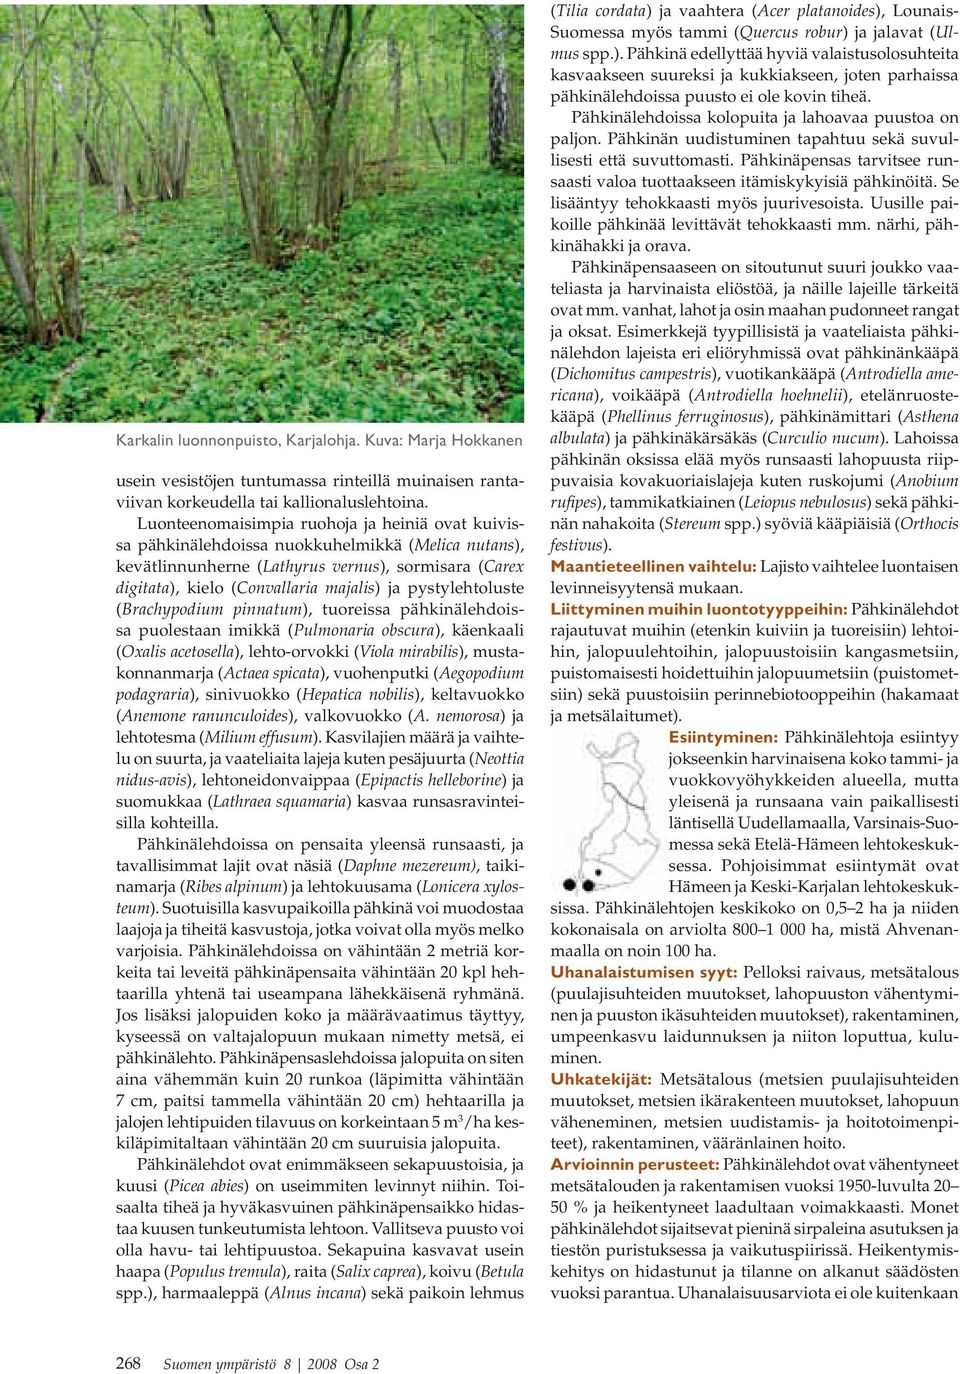 pystylehtoluste (Brachypodium pinnatum), tuoreissa pähkinälehdoissa puolestaan imikkä (Pulmonaria obscura), käenkaali (Oxalis acetosella), lehto-orvokki (Viola mirabilis), mustakonnanmarja (Actaea